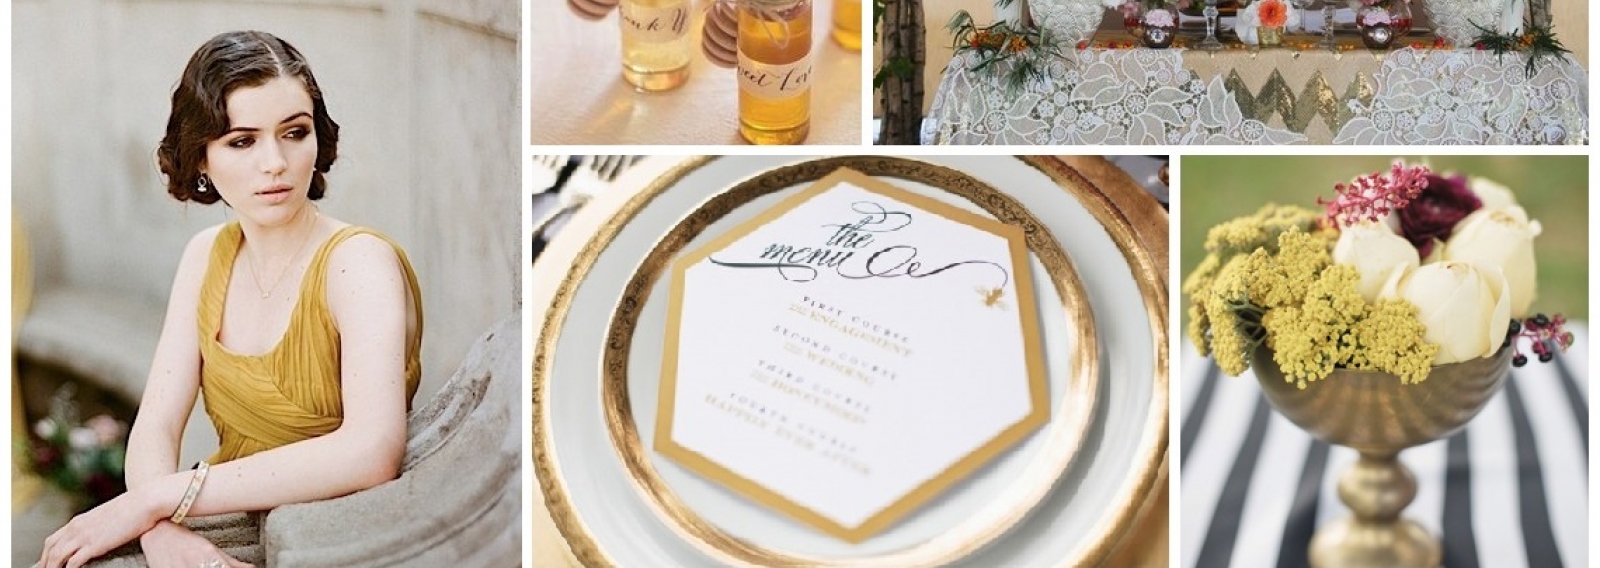 Свадебная палитра: медовый, коричневый, винный и серый + бесплатный макет свадебной полиграфии от студии Айвори